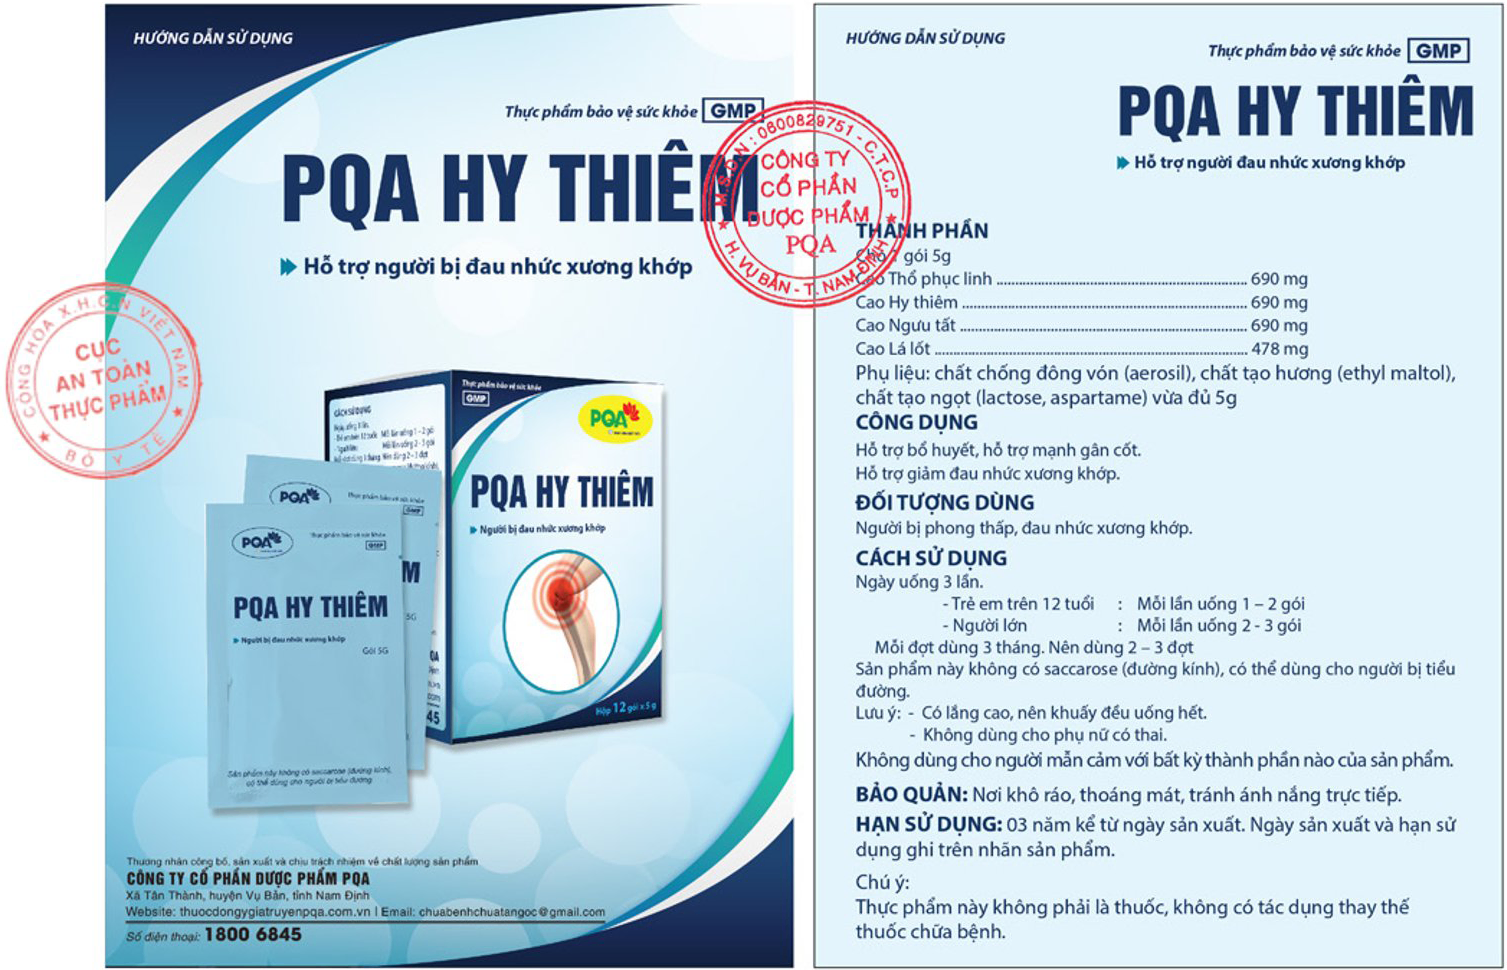 hướng dẫn sử dụng pqa hy thiêm